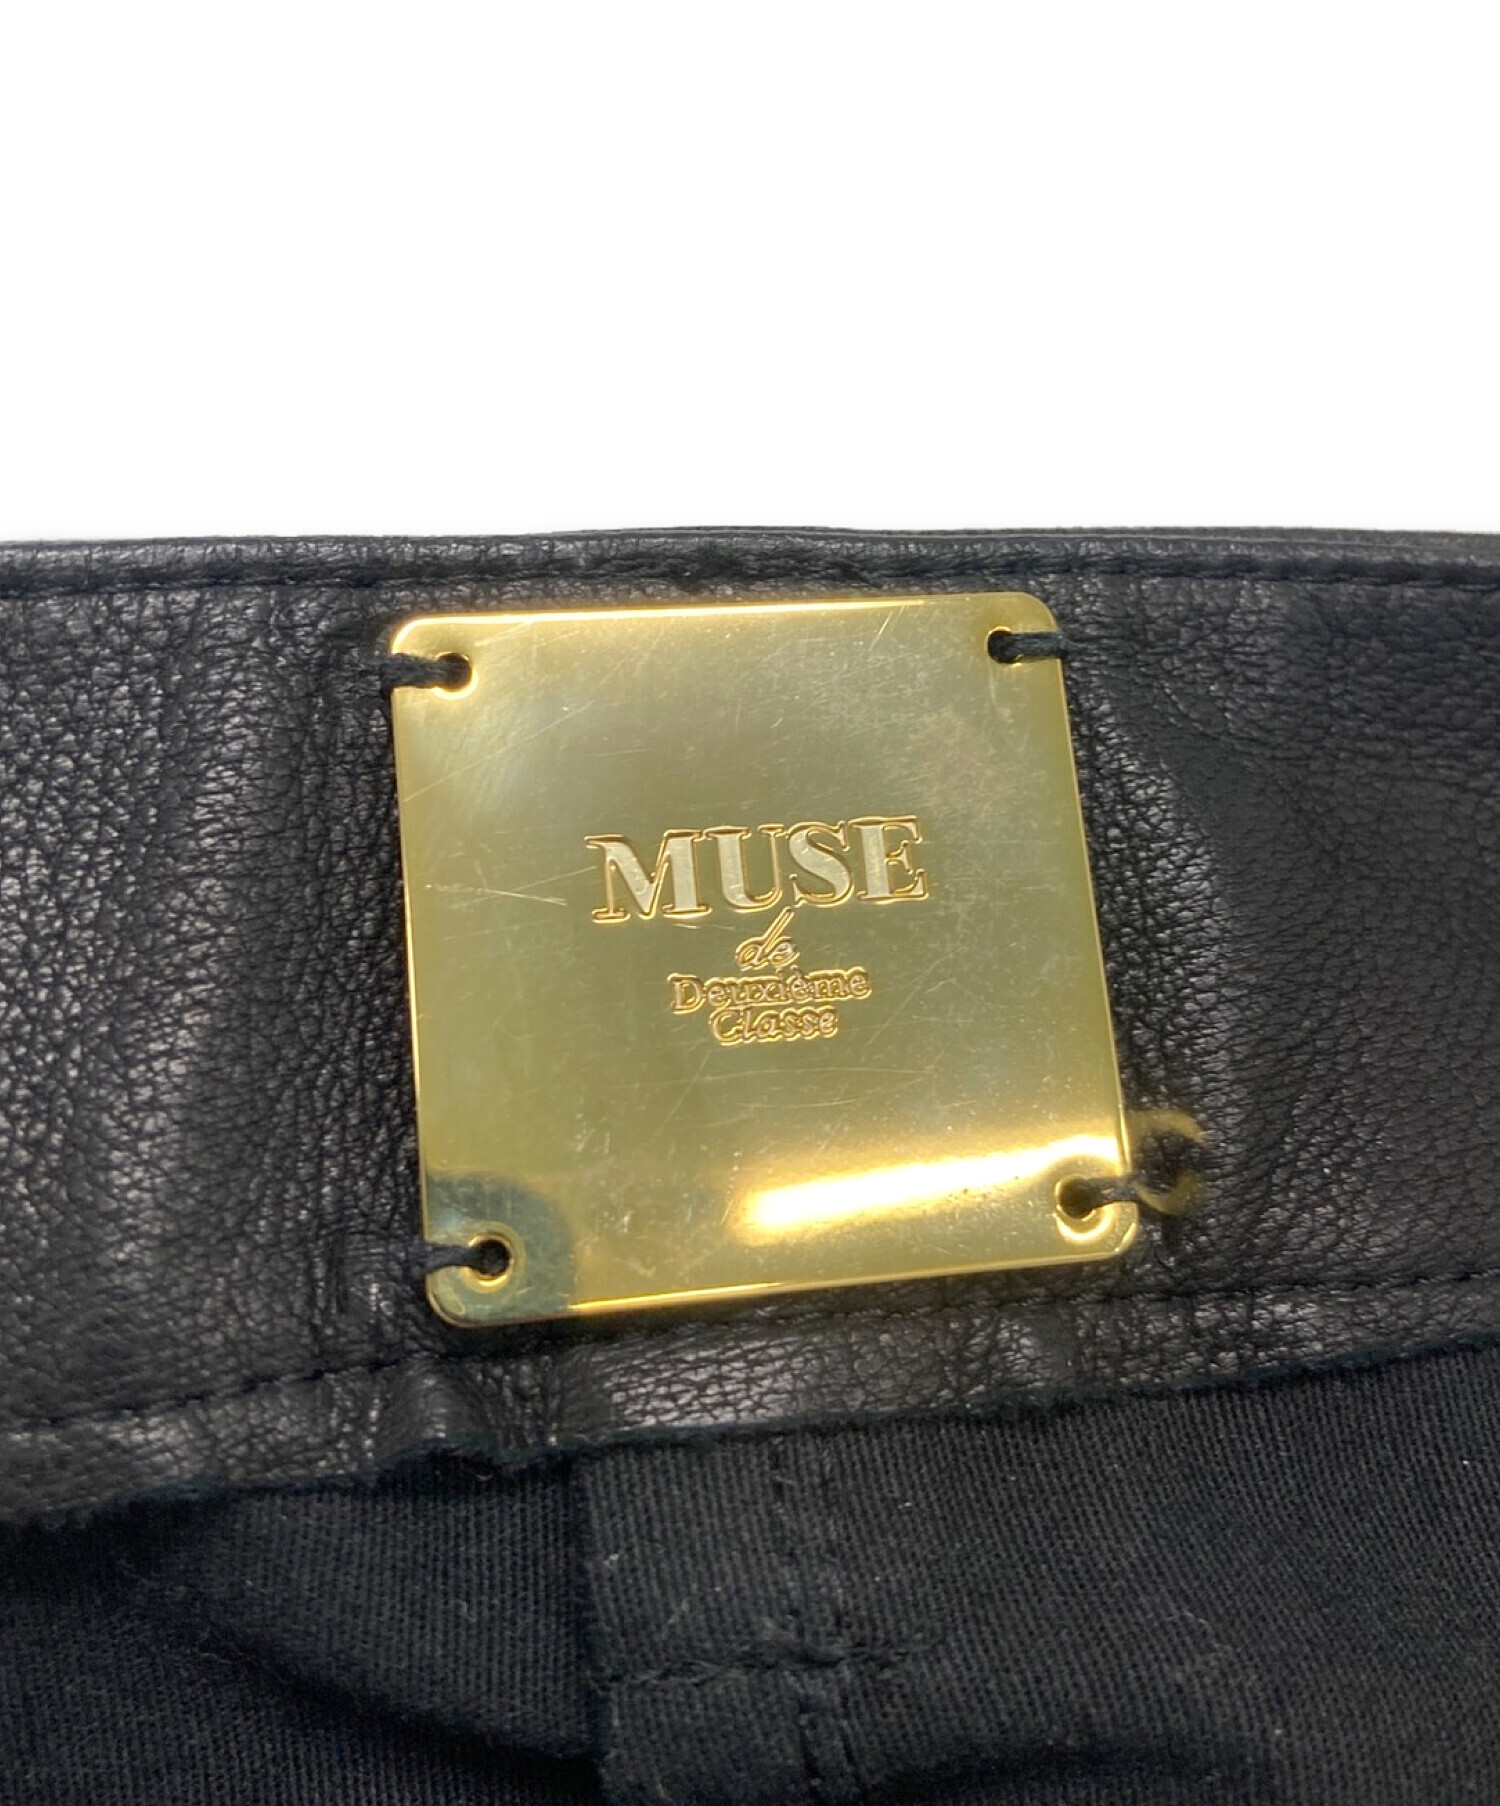 MUSE de Deuxieme Classe (ミューズ ドゥーズィエム クラス) レザースカート ブラック サイズ:36